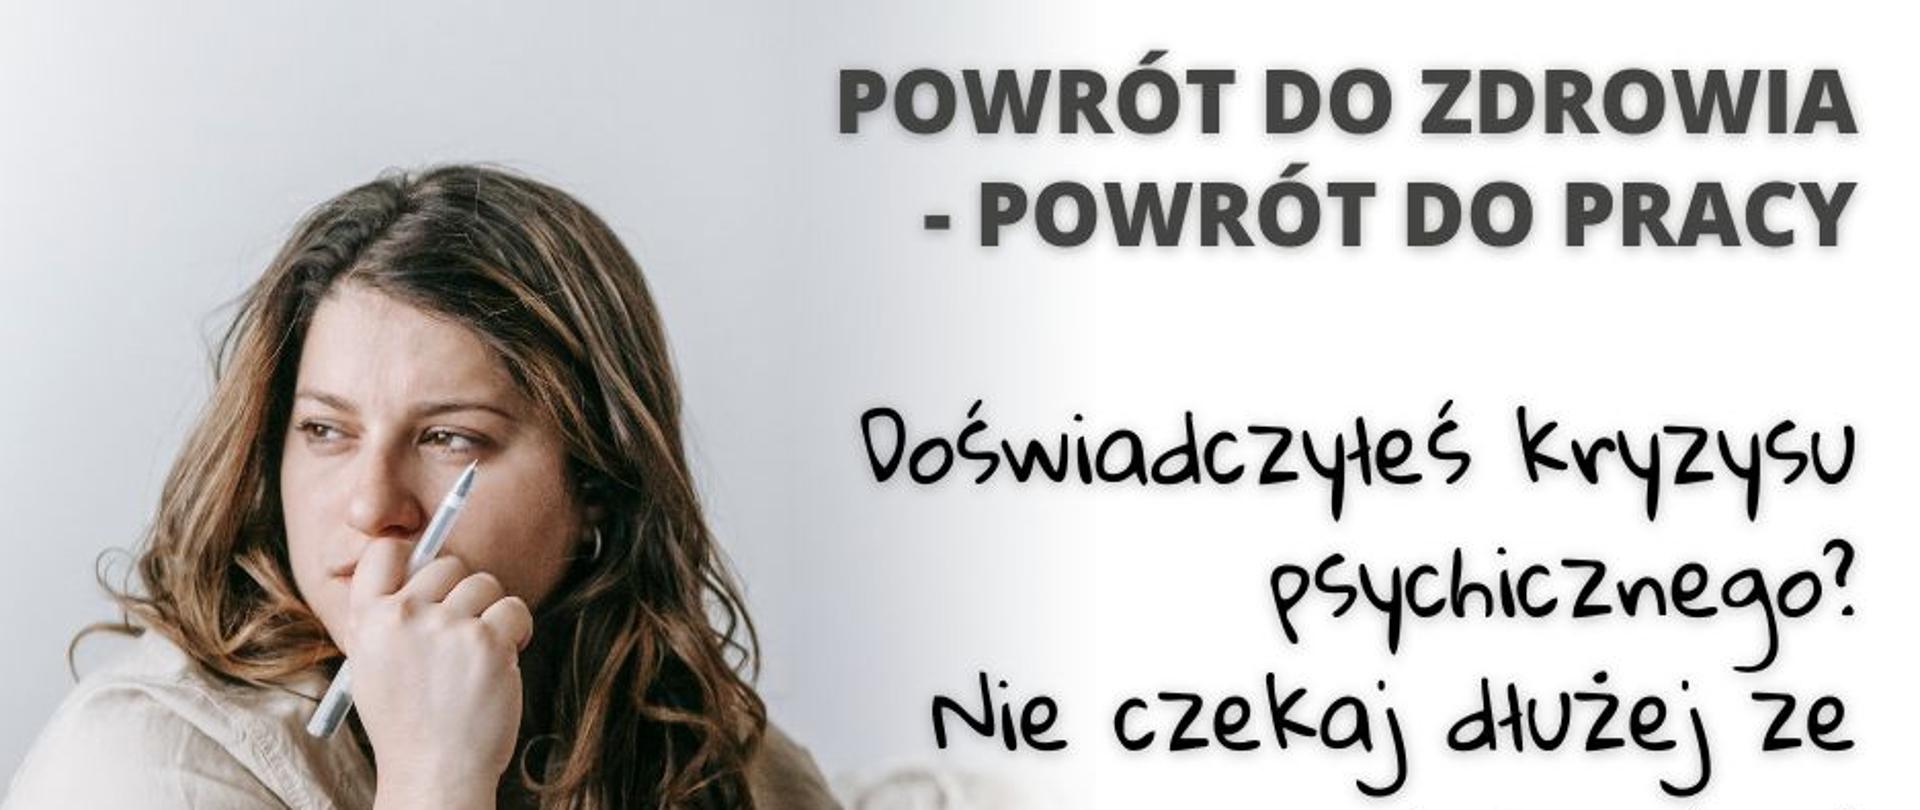 POWRÓT_DO_ZDROWIA_-_POWRÓT_DO_PRACY_(7)